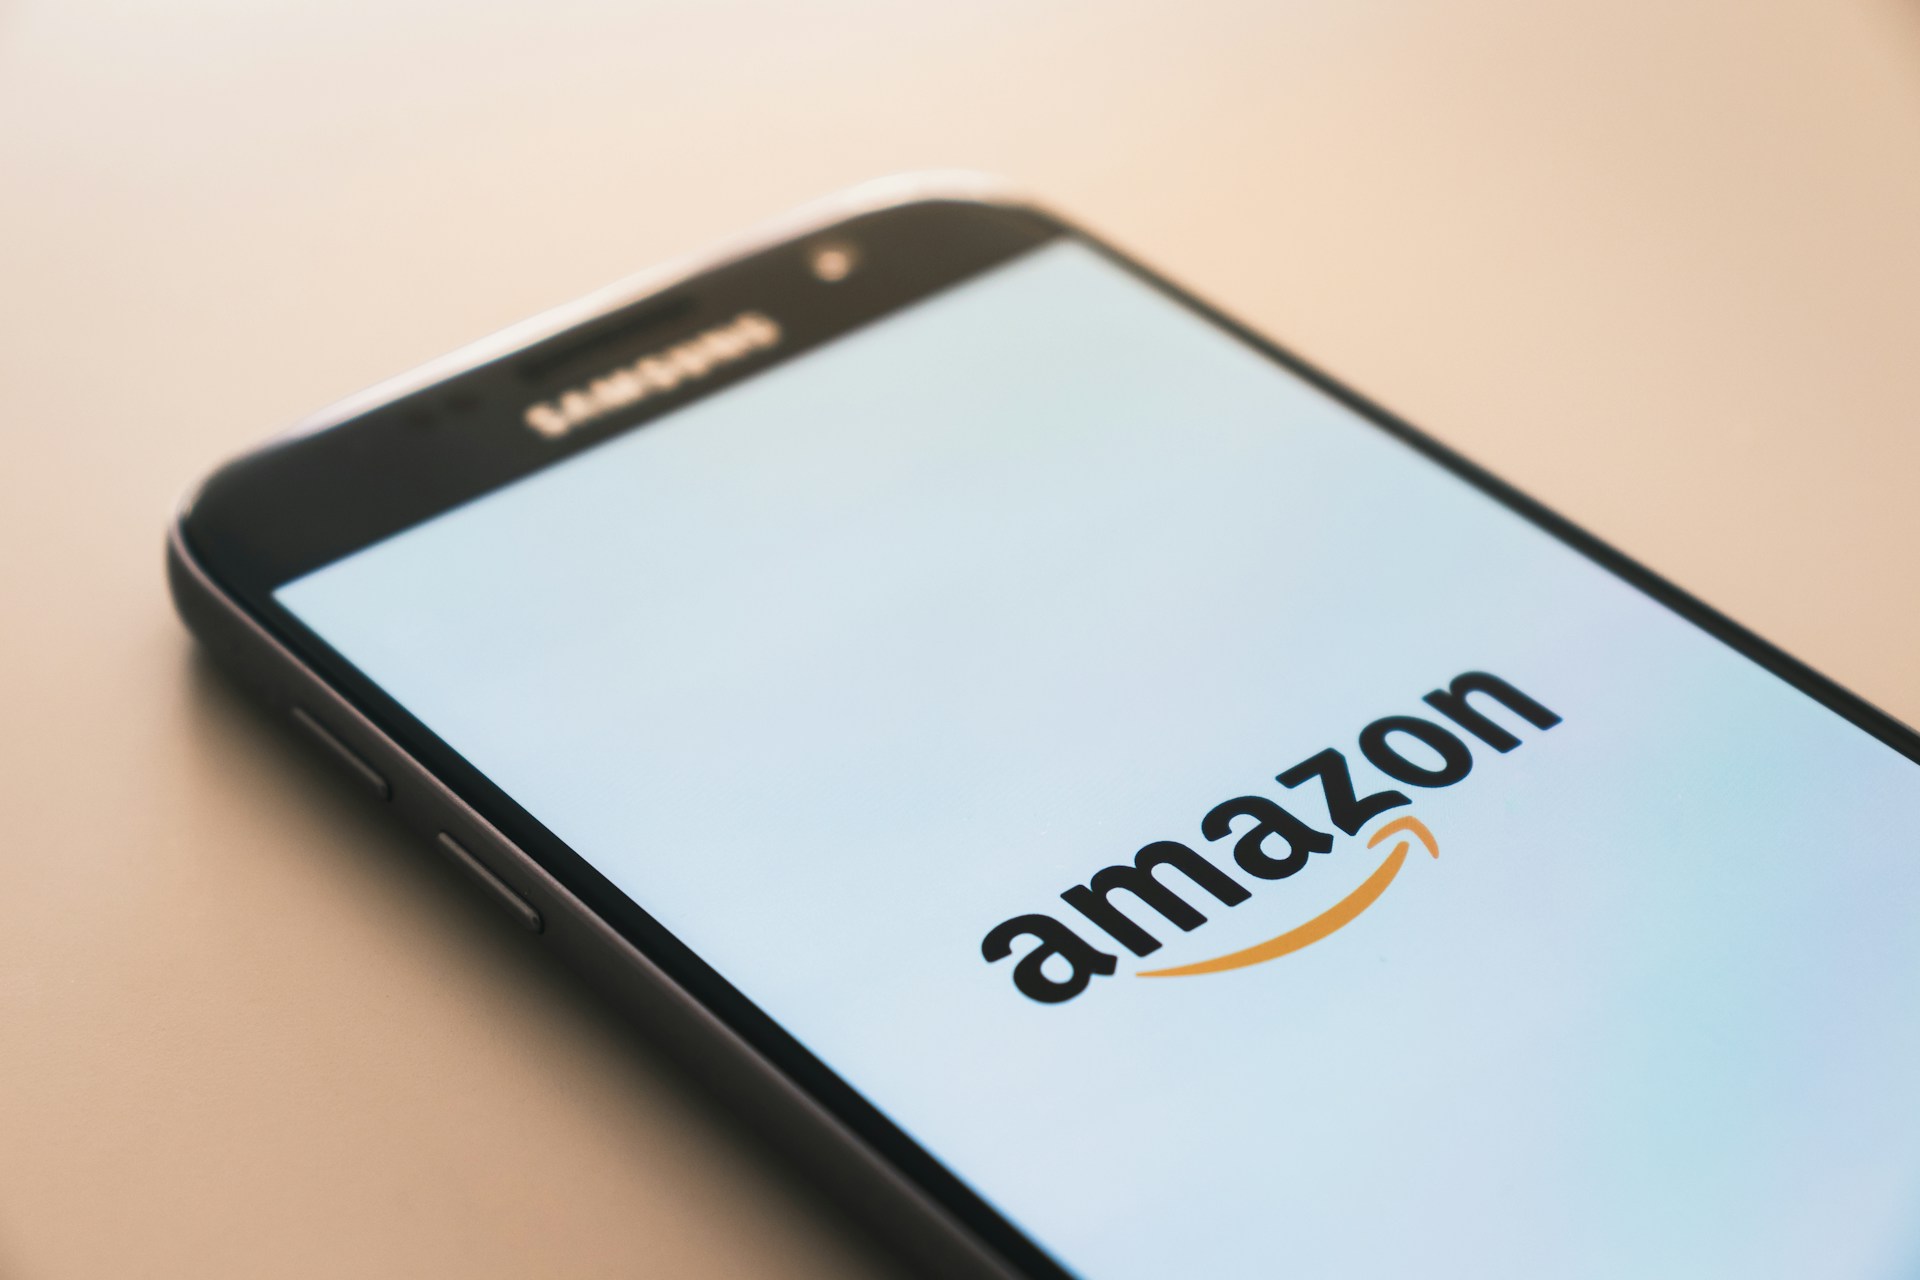 Amazon élargit la disponibilité de Q, un chatbot d'entreprise doté d'une intelligence artificielle